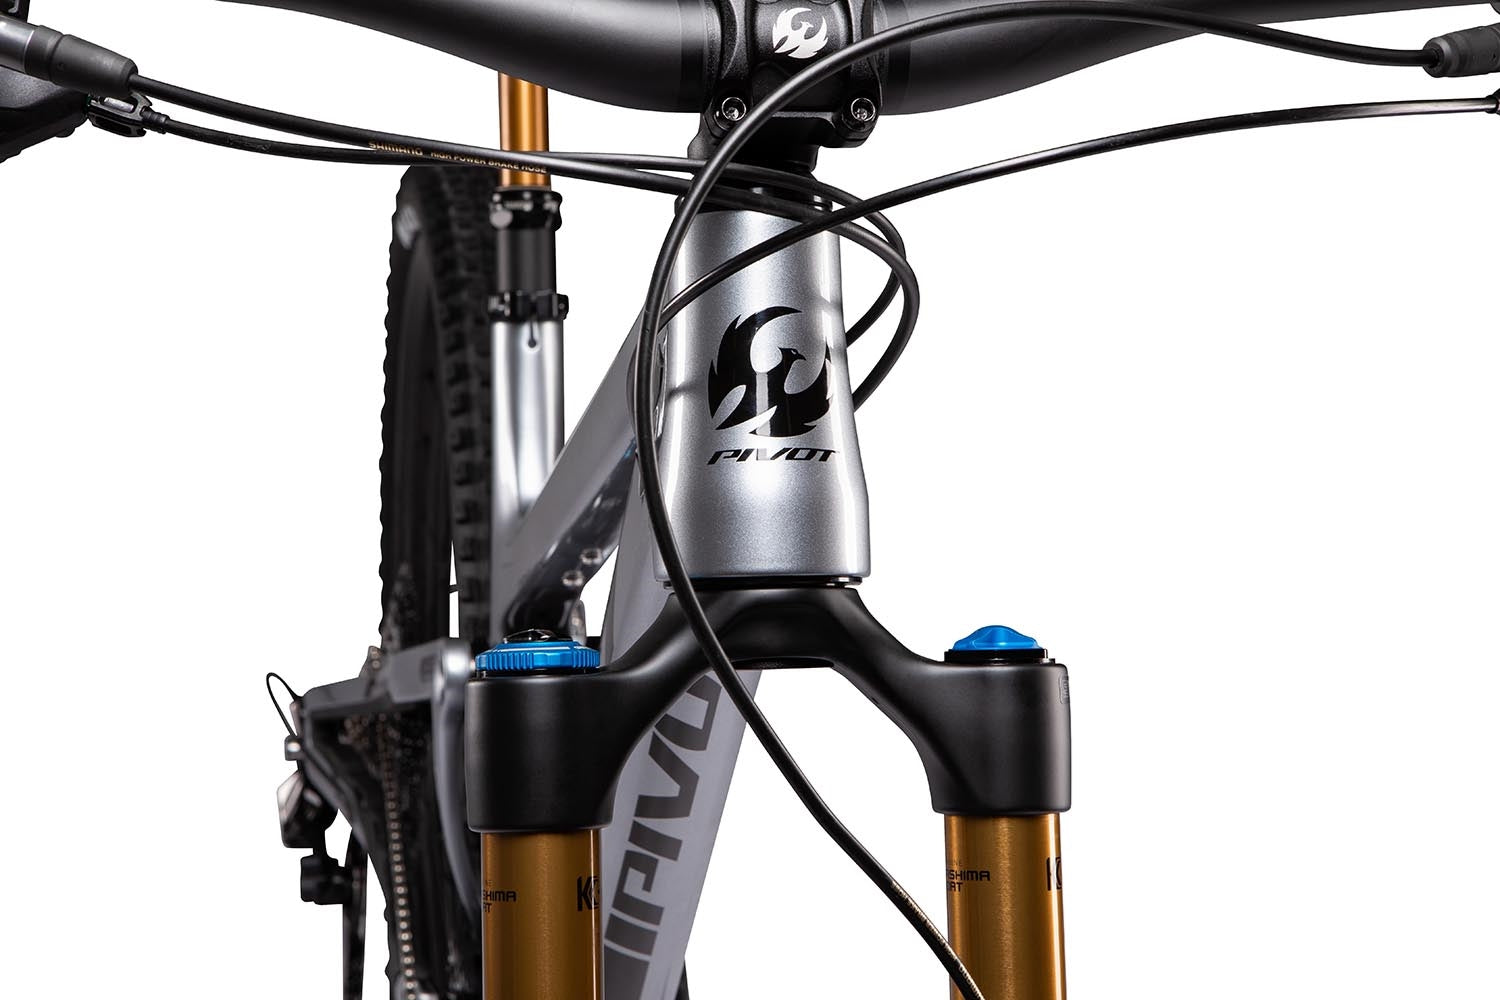 Bicicleta de Montaña Doble Suspensión Pivot Trail 429 Team XX1 AXS Rodados de Carbono 29"